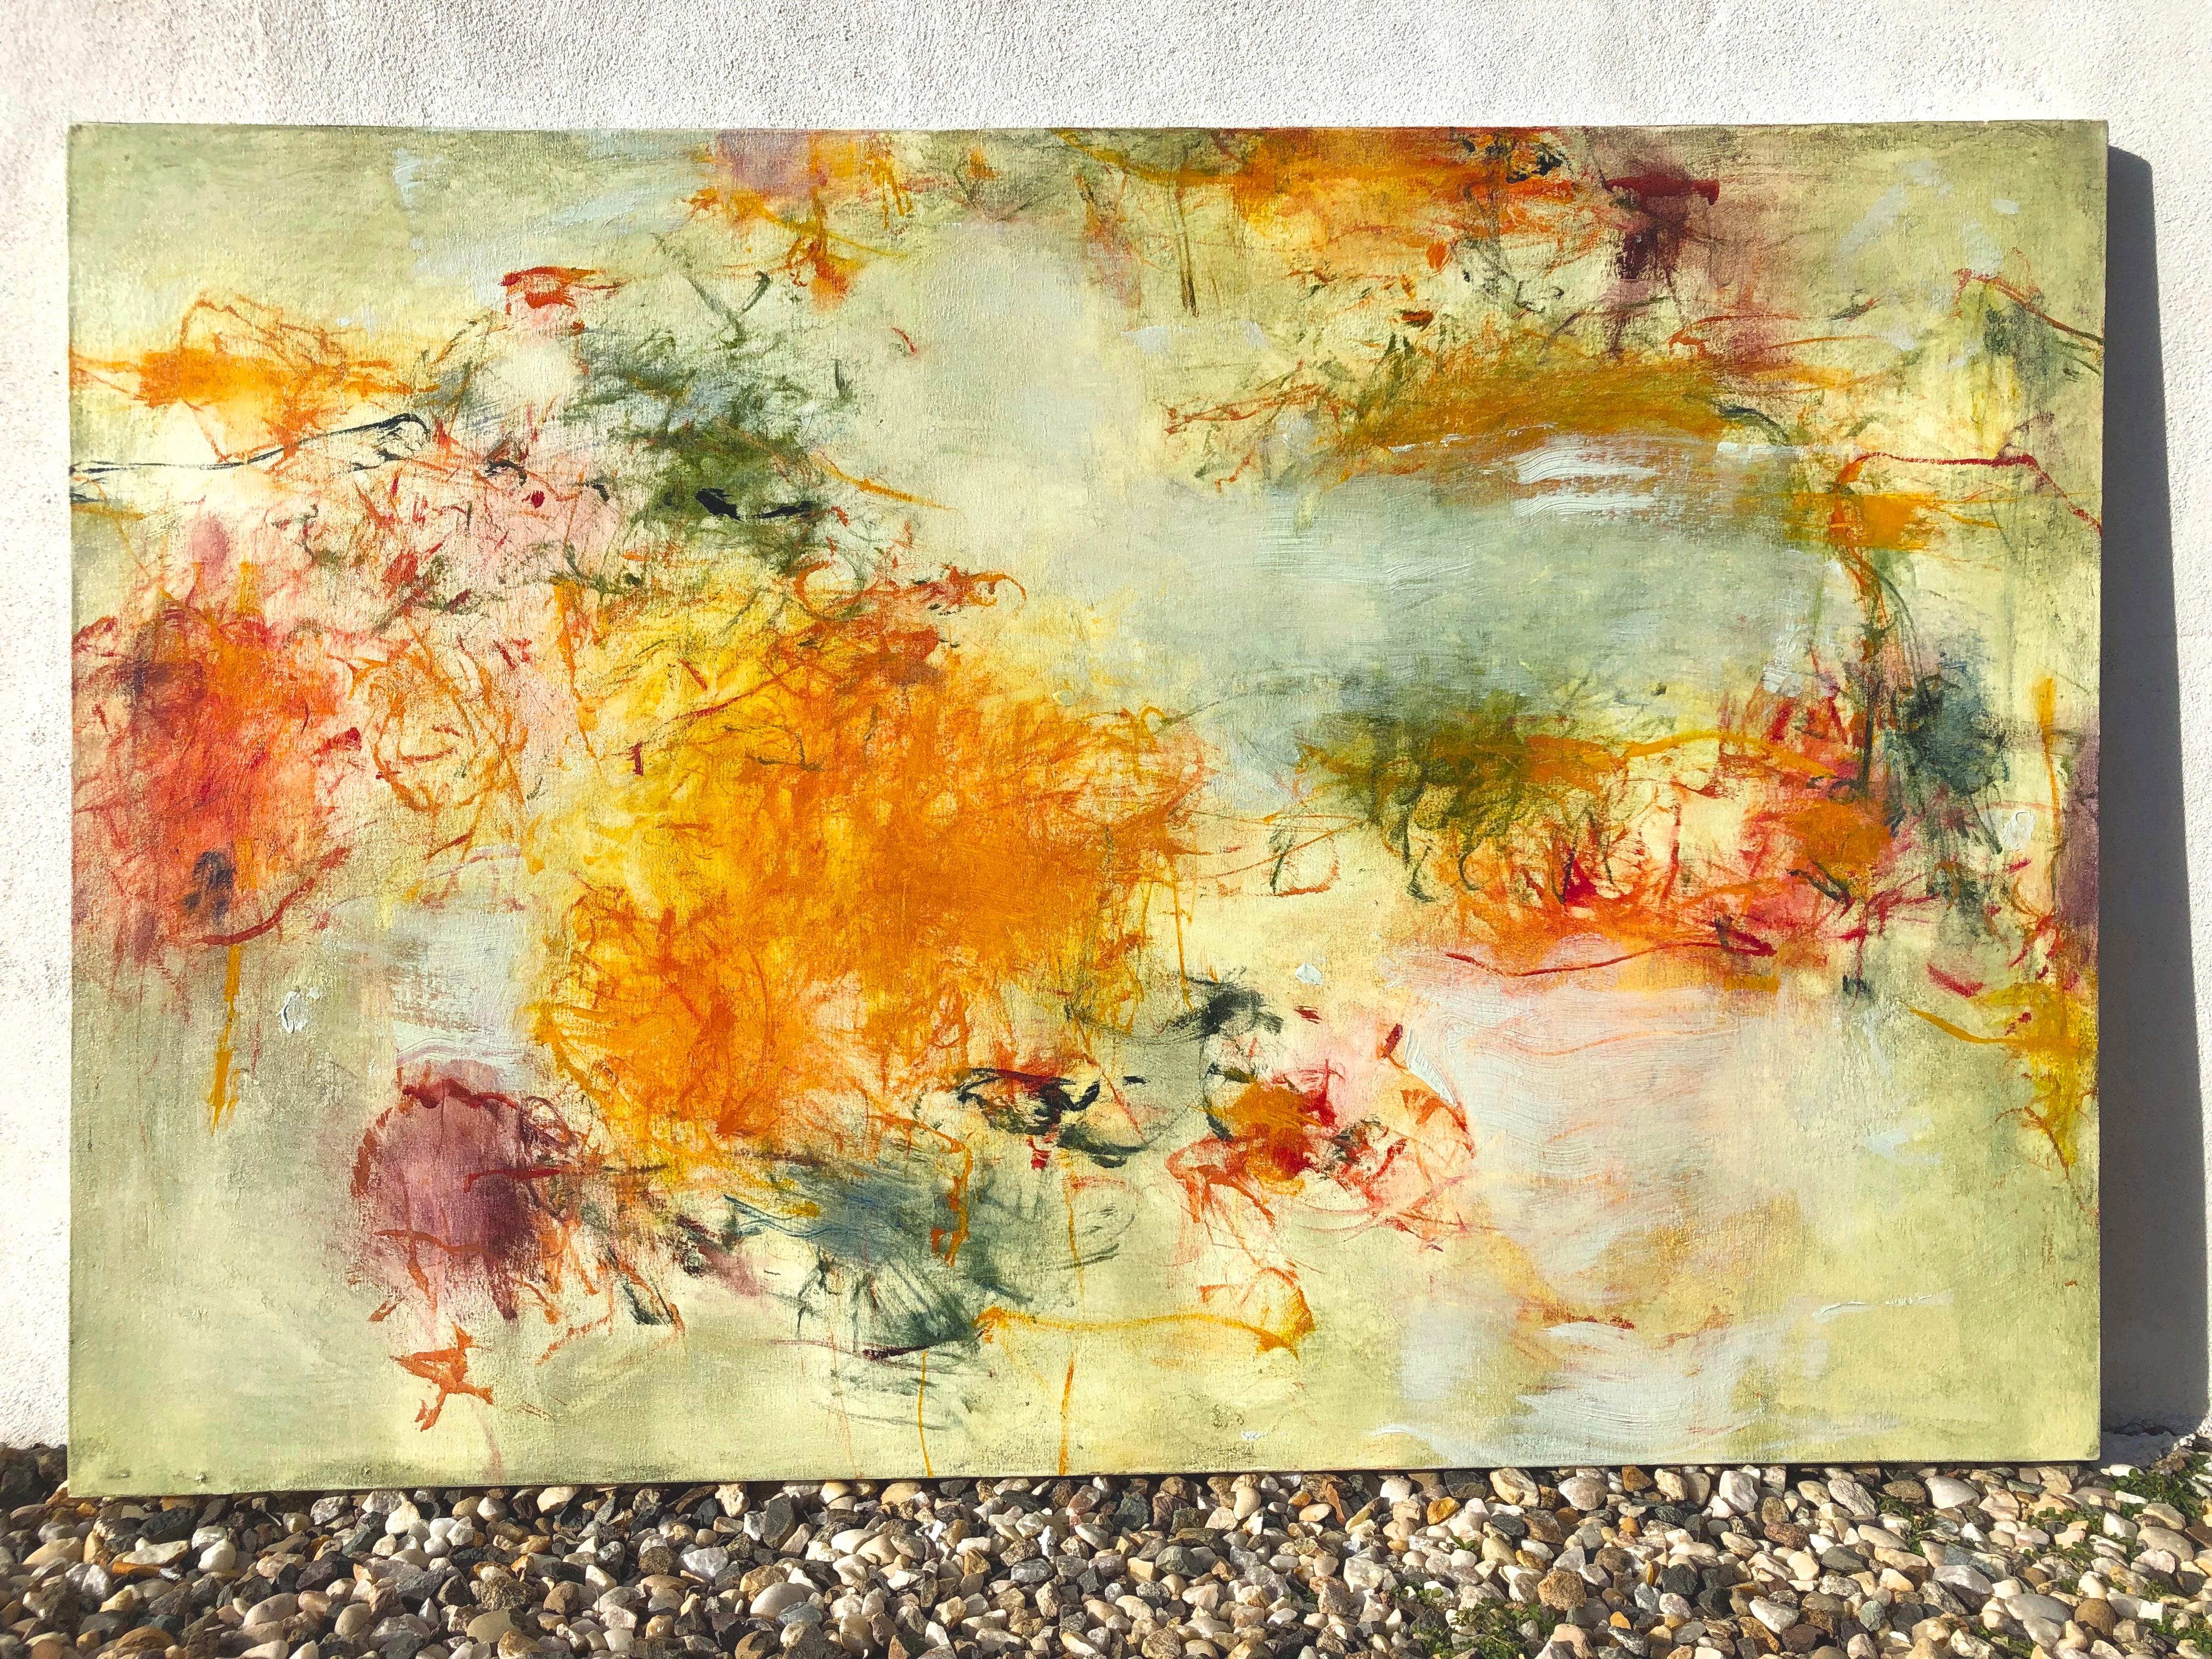 Improvisation II, oil on canvas, 40